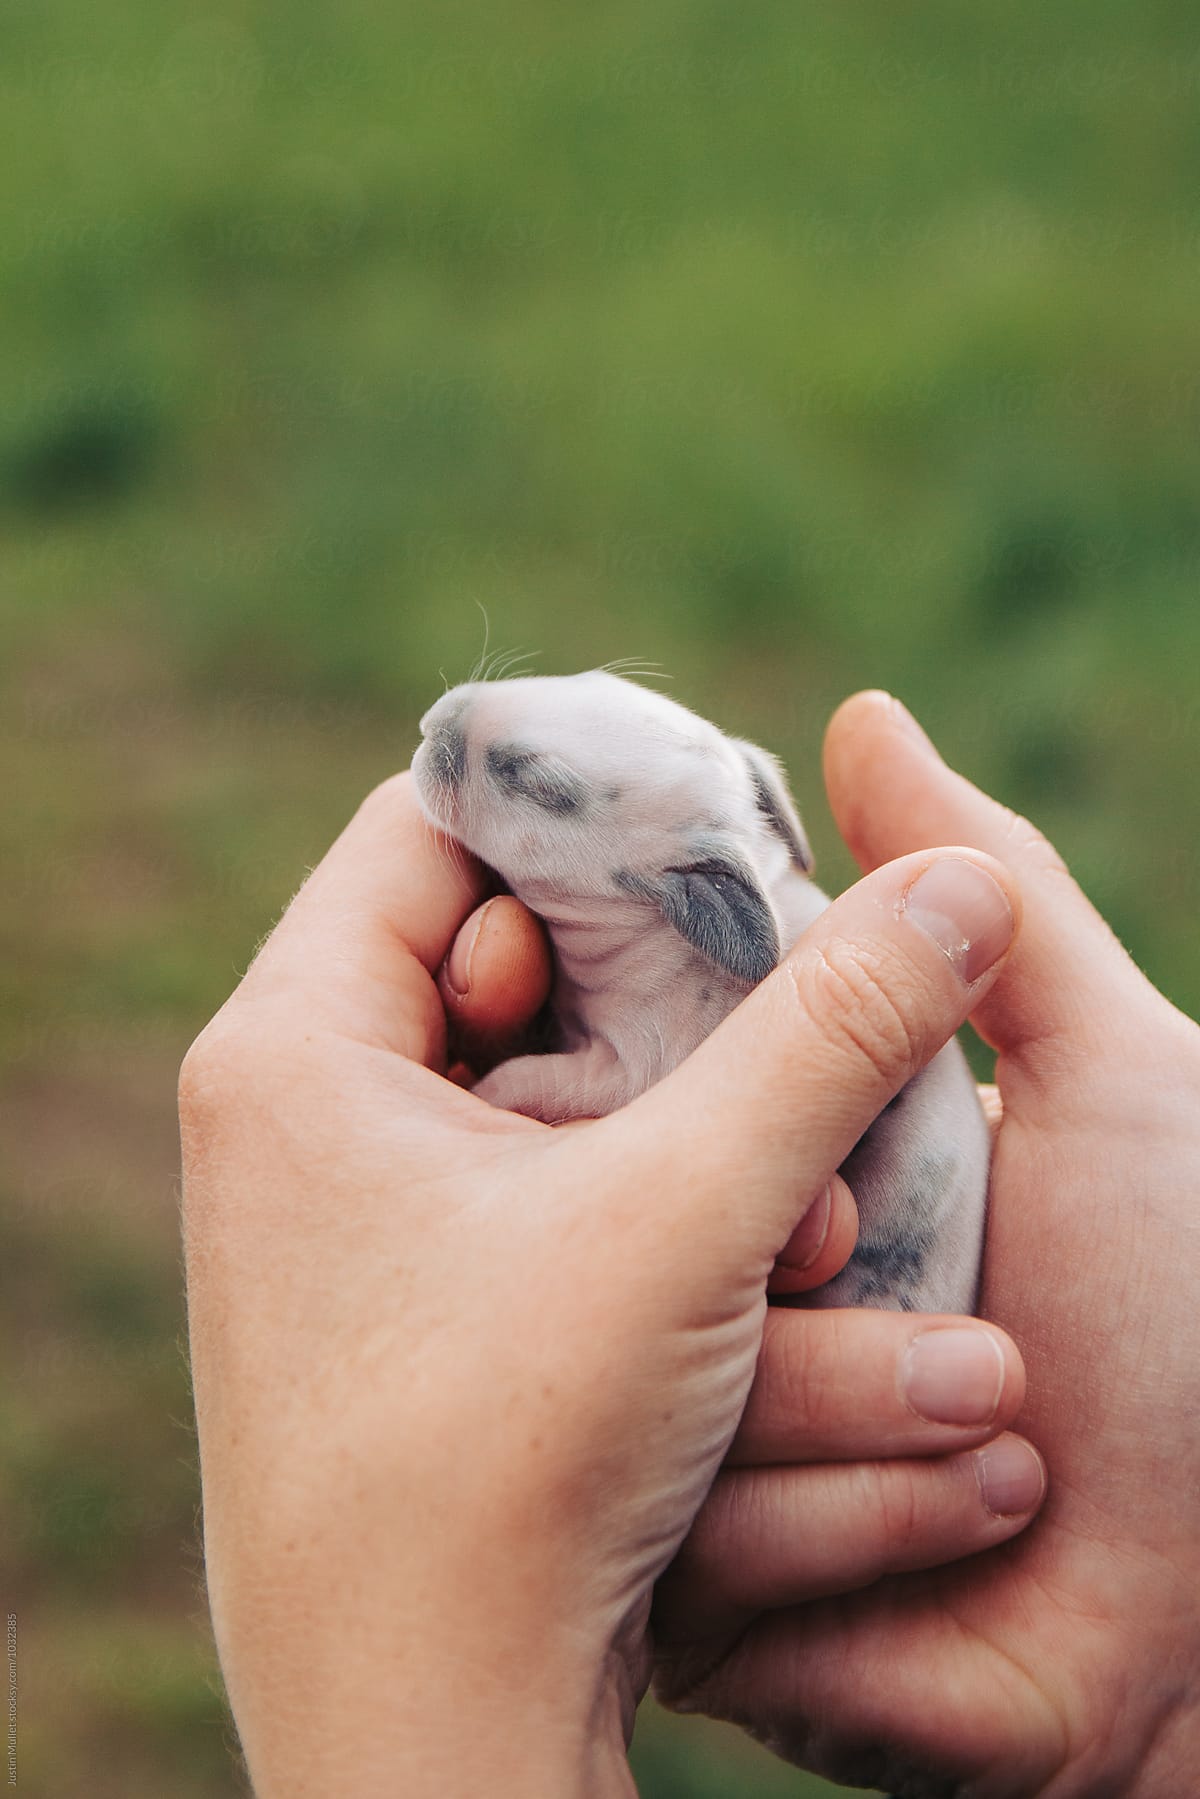 Newborn bunny being held gently